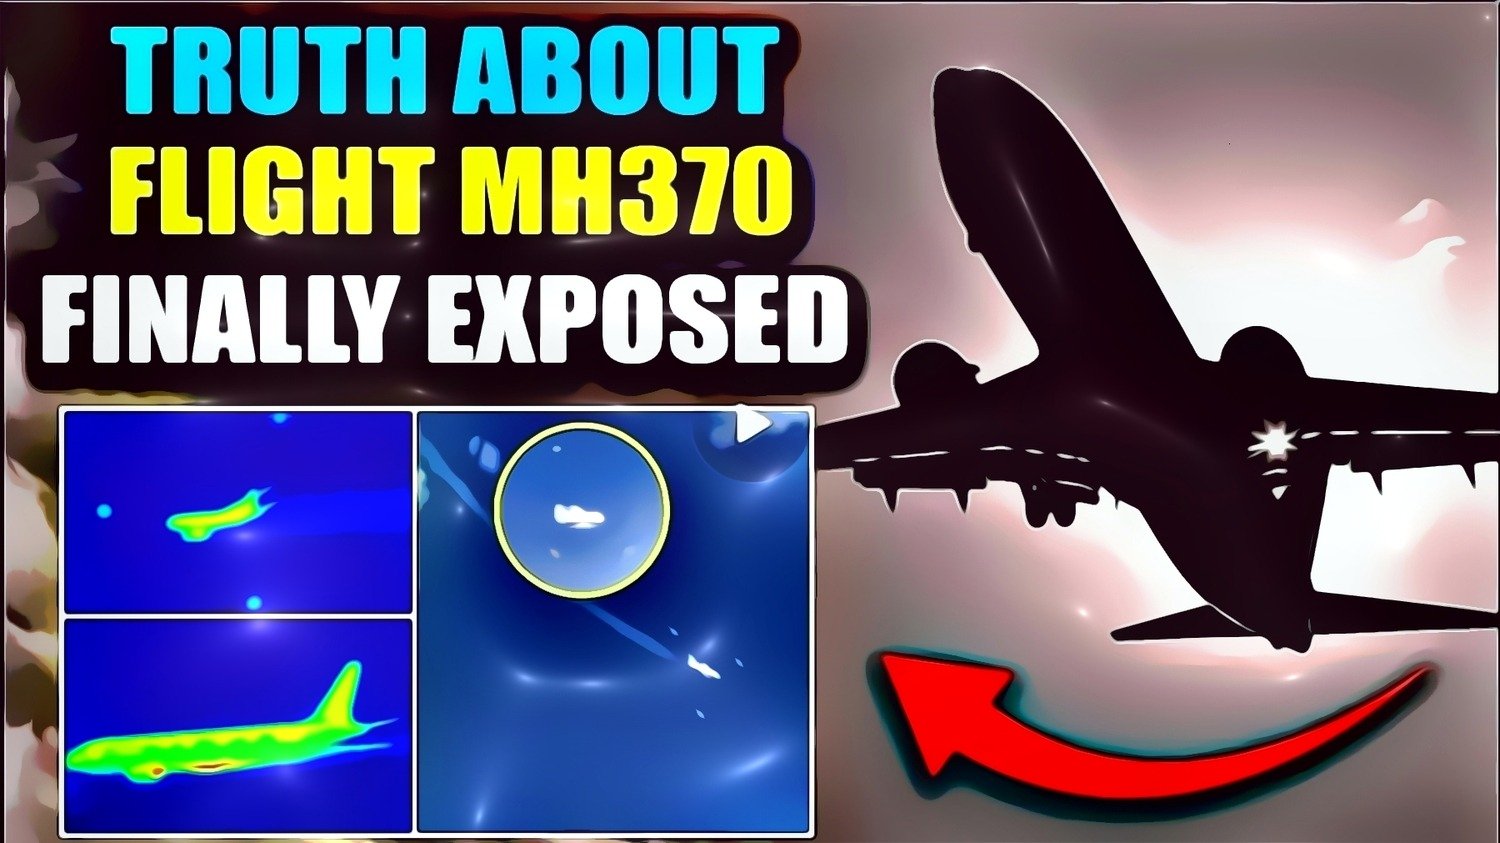 Järkyttävät vuodetut videot paljastavat, että MH370 “katosi” natsiteknologian avulla.